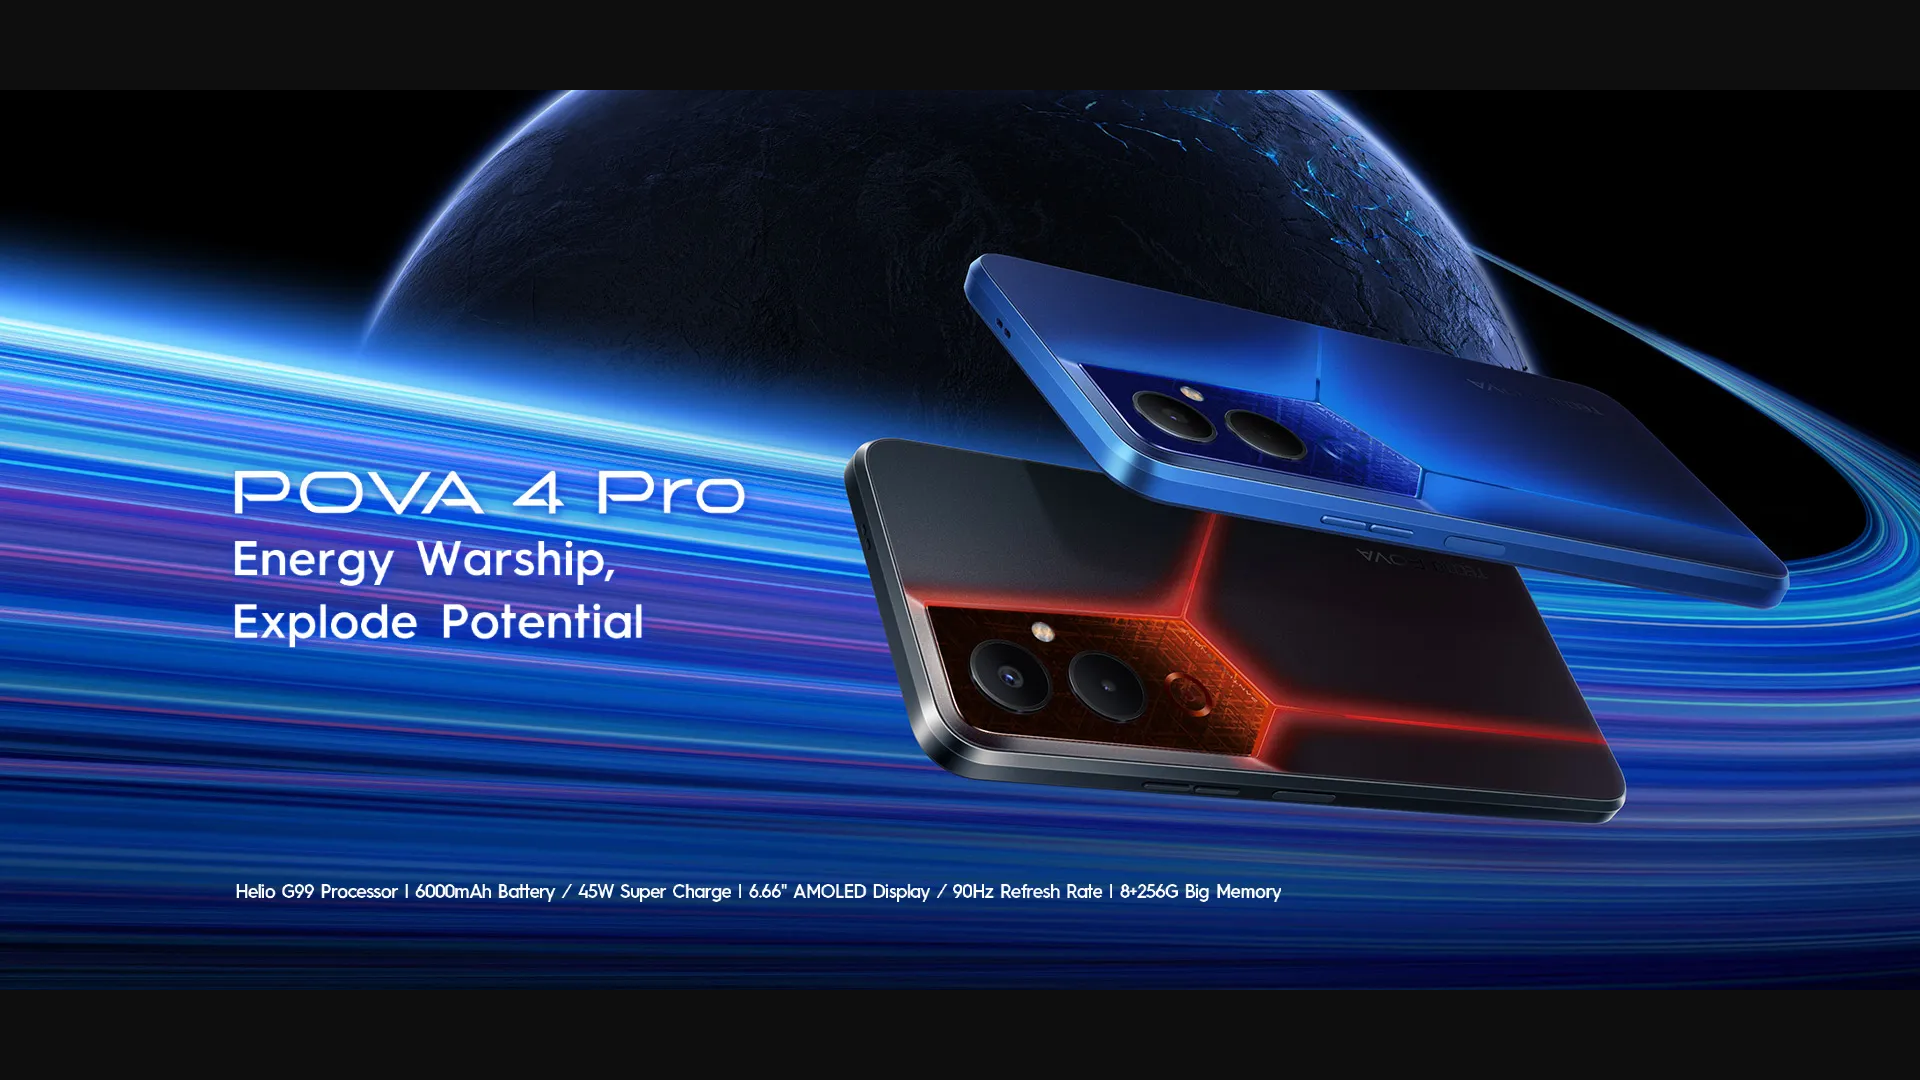 Spesifikasi Tecno Pova 4 Pro! Hp Gaming Spesifikasi Mumpuni, Desain Stylish dengan Harga Cuma 2 Jutaan Saja